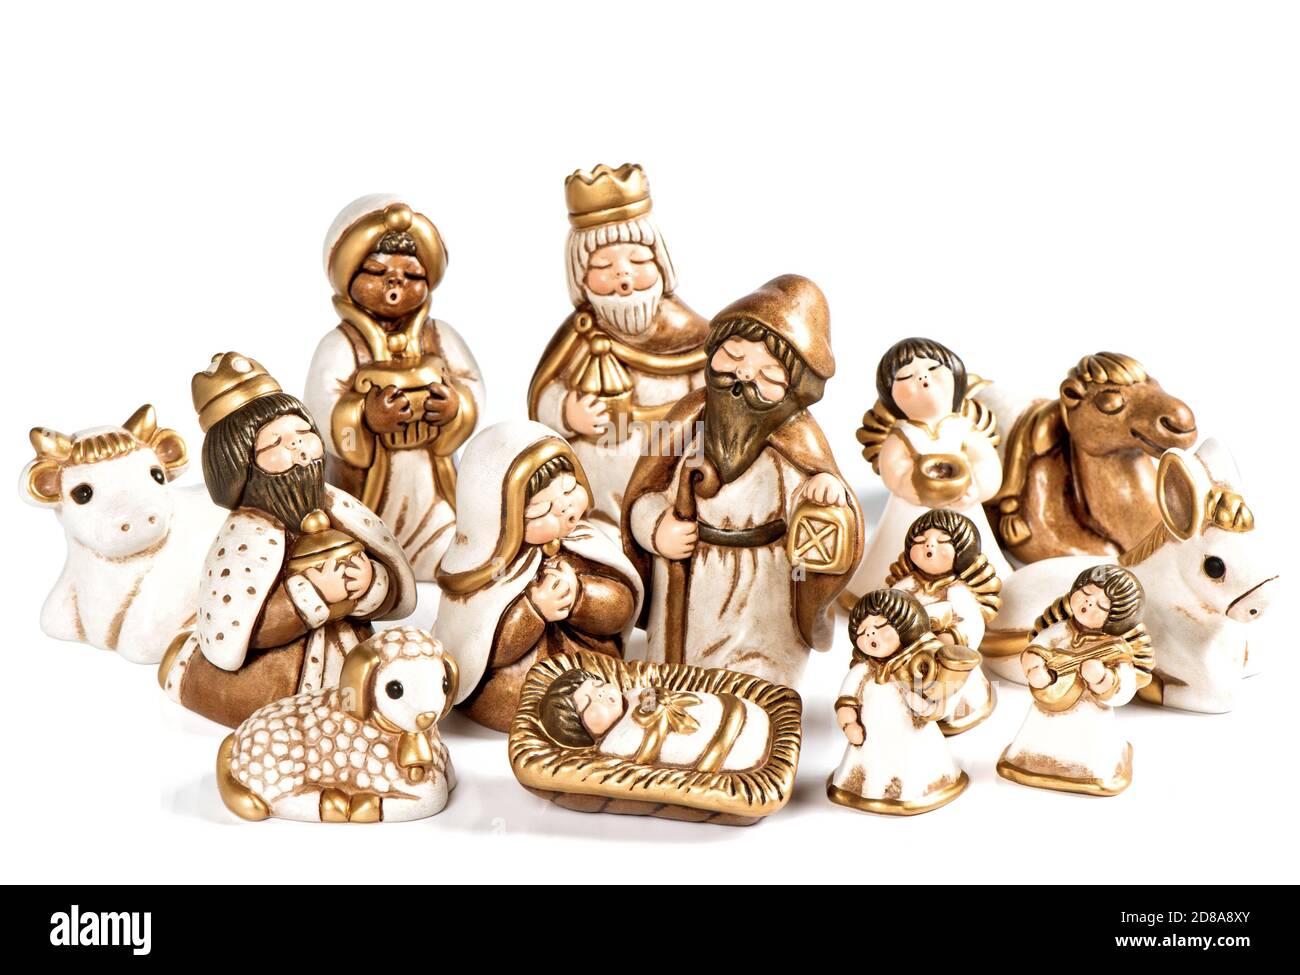 Weihnachtskrippe. Krippe. Heilige Familie. Jesus Christus, Maria und Josef, Engel und drei Könige Stockfoto